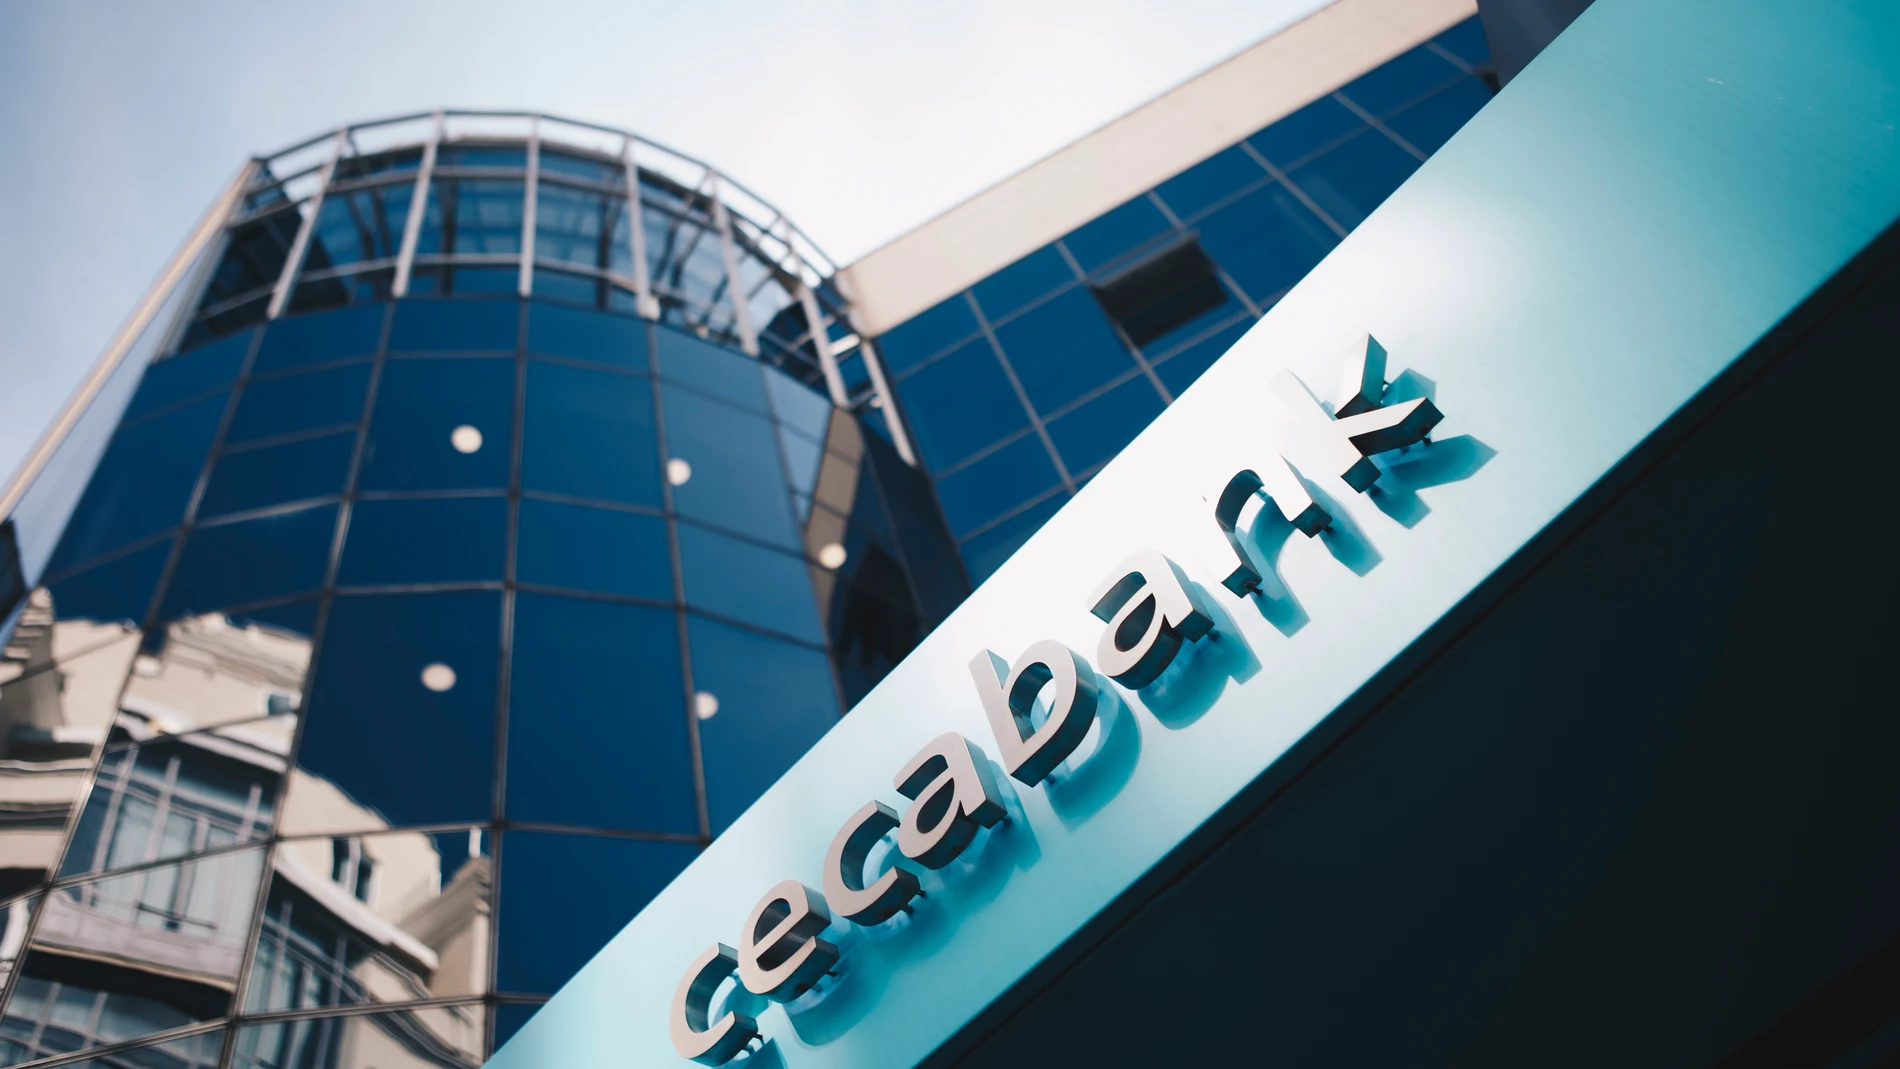 Economía/Finanzas.- Cecabank alcanza un récord en patrimonio depositado y activos bajo custodia